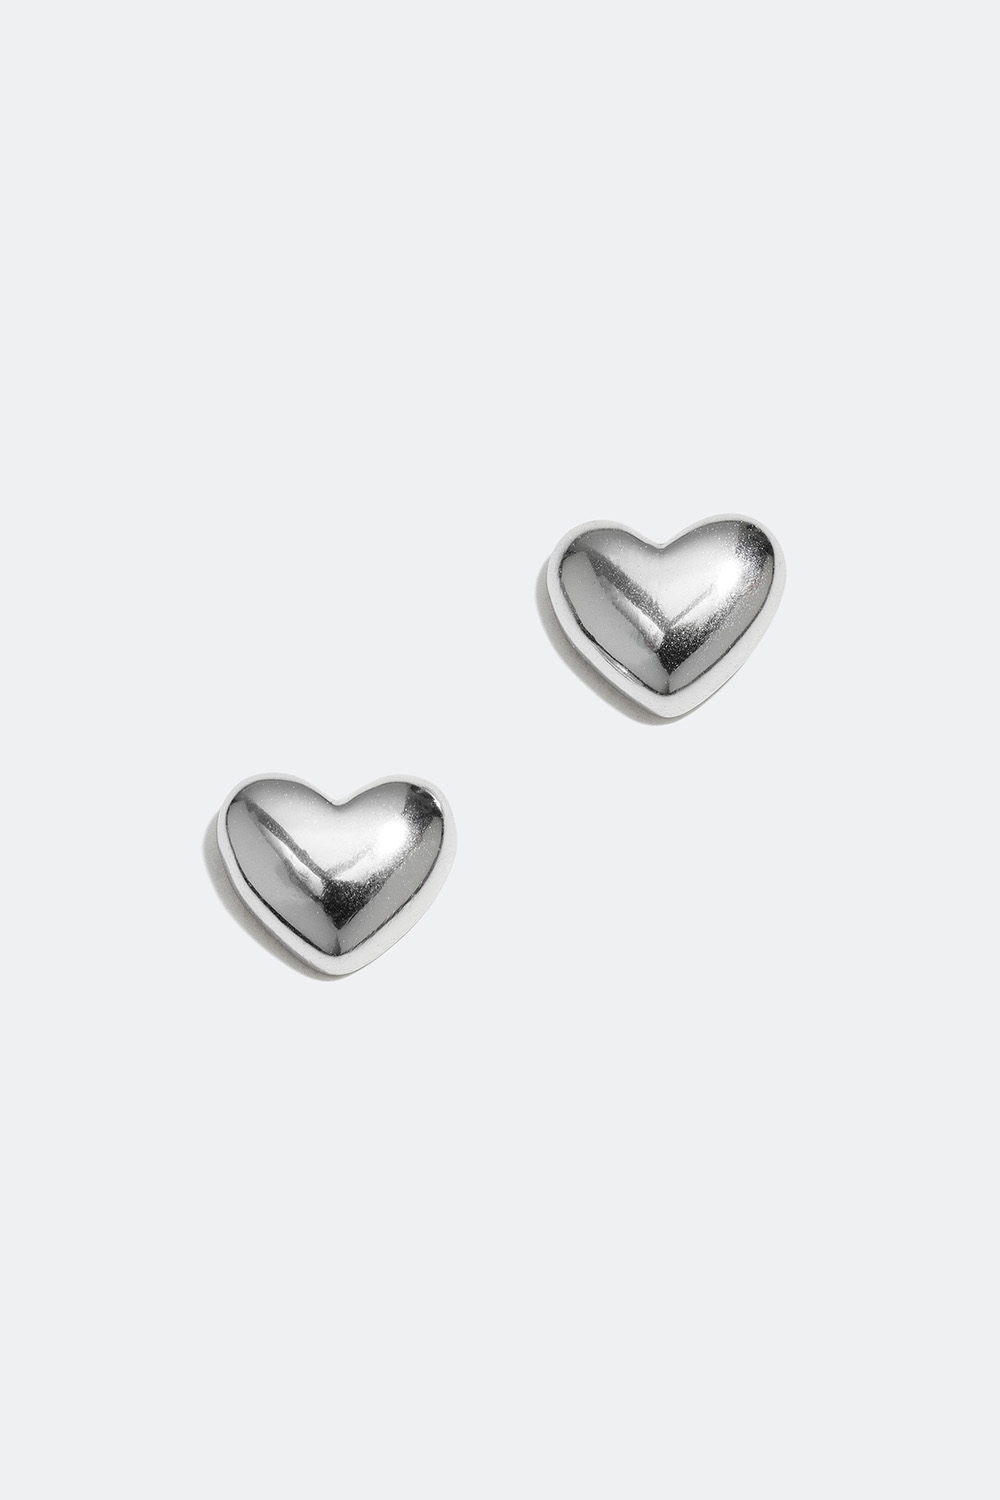 Pienet hopeiset nappikorvakorut, joissa koristeena sydän ryhmässä Lapsille / Lasten korut / Lasten korvakorut @ Glitter (405000091001)